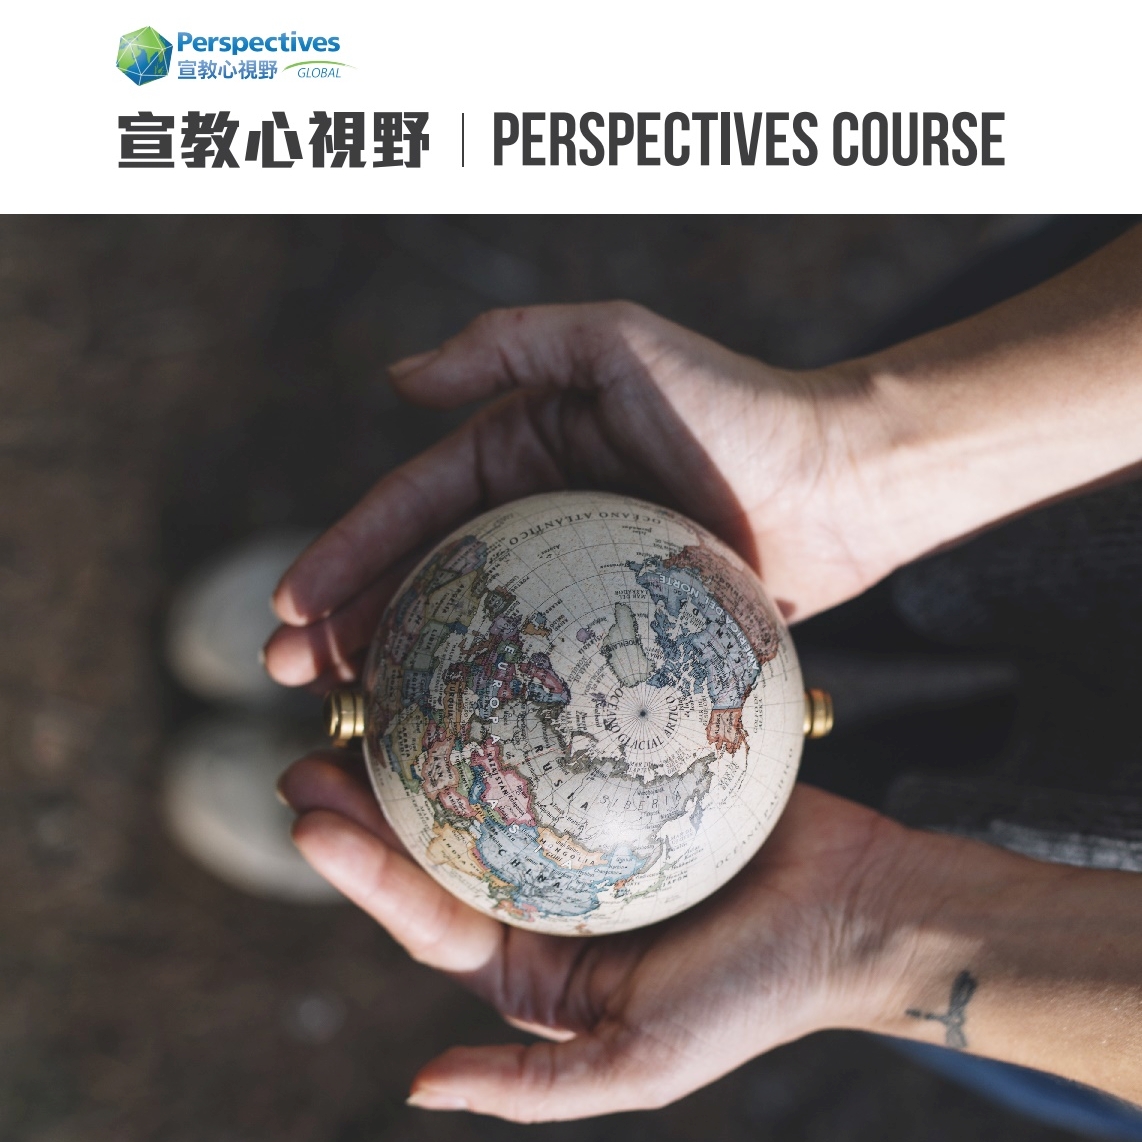 【協辦活動】「宣教心視野」展望課程(Perspectives Course) 2022公開課程